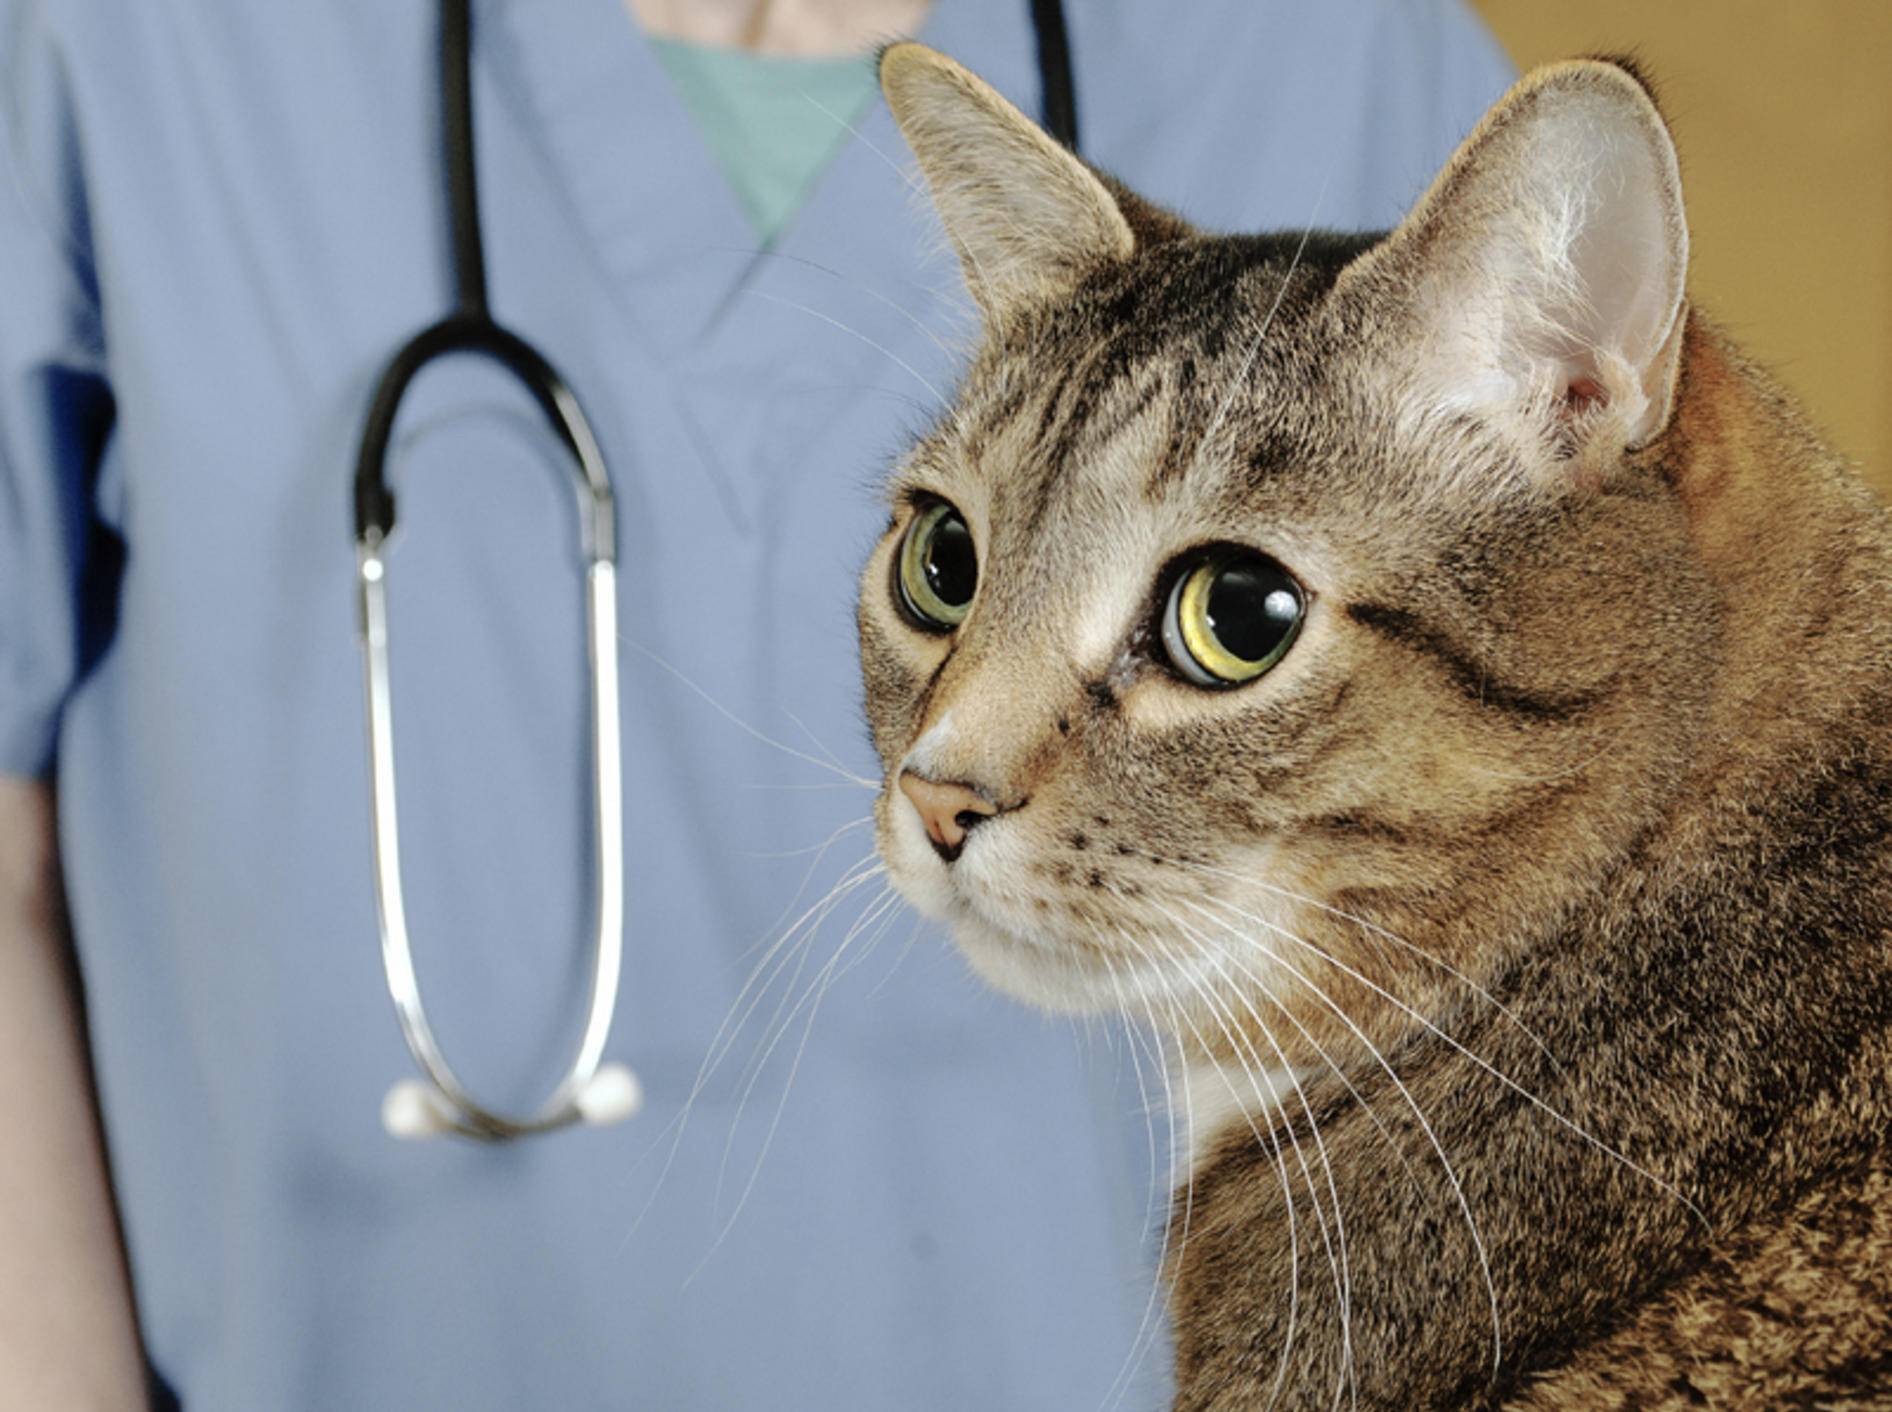 Bluthochdruck bei Katzen muss der Tierarzt überprüfen, da die Symptome unauffällig sind – Shutterstock / Mr.Nikon